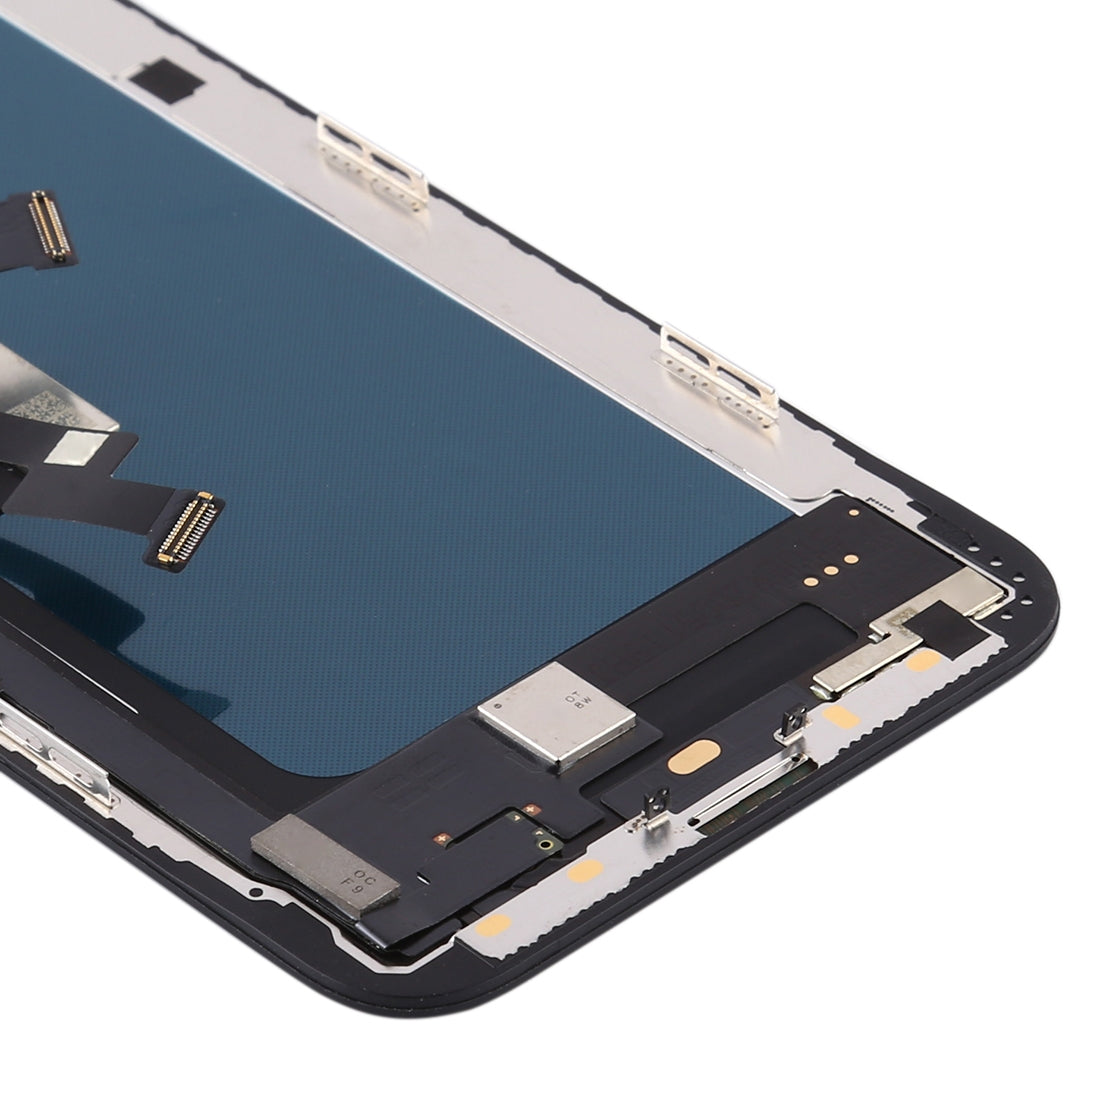 Ecran LCD + Vitre Tactile Apple iPhone XS (Version TFT) Noir